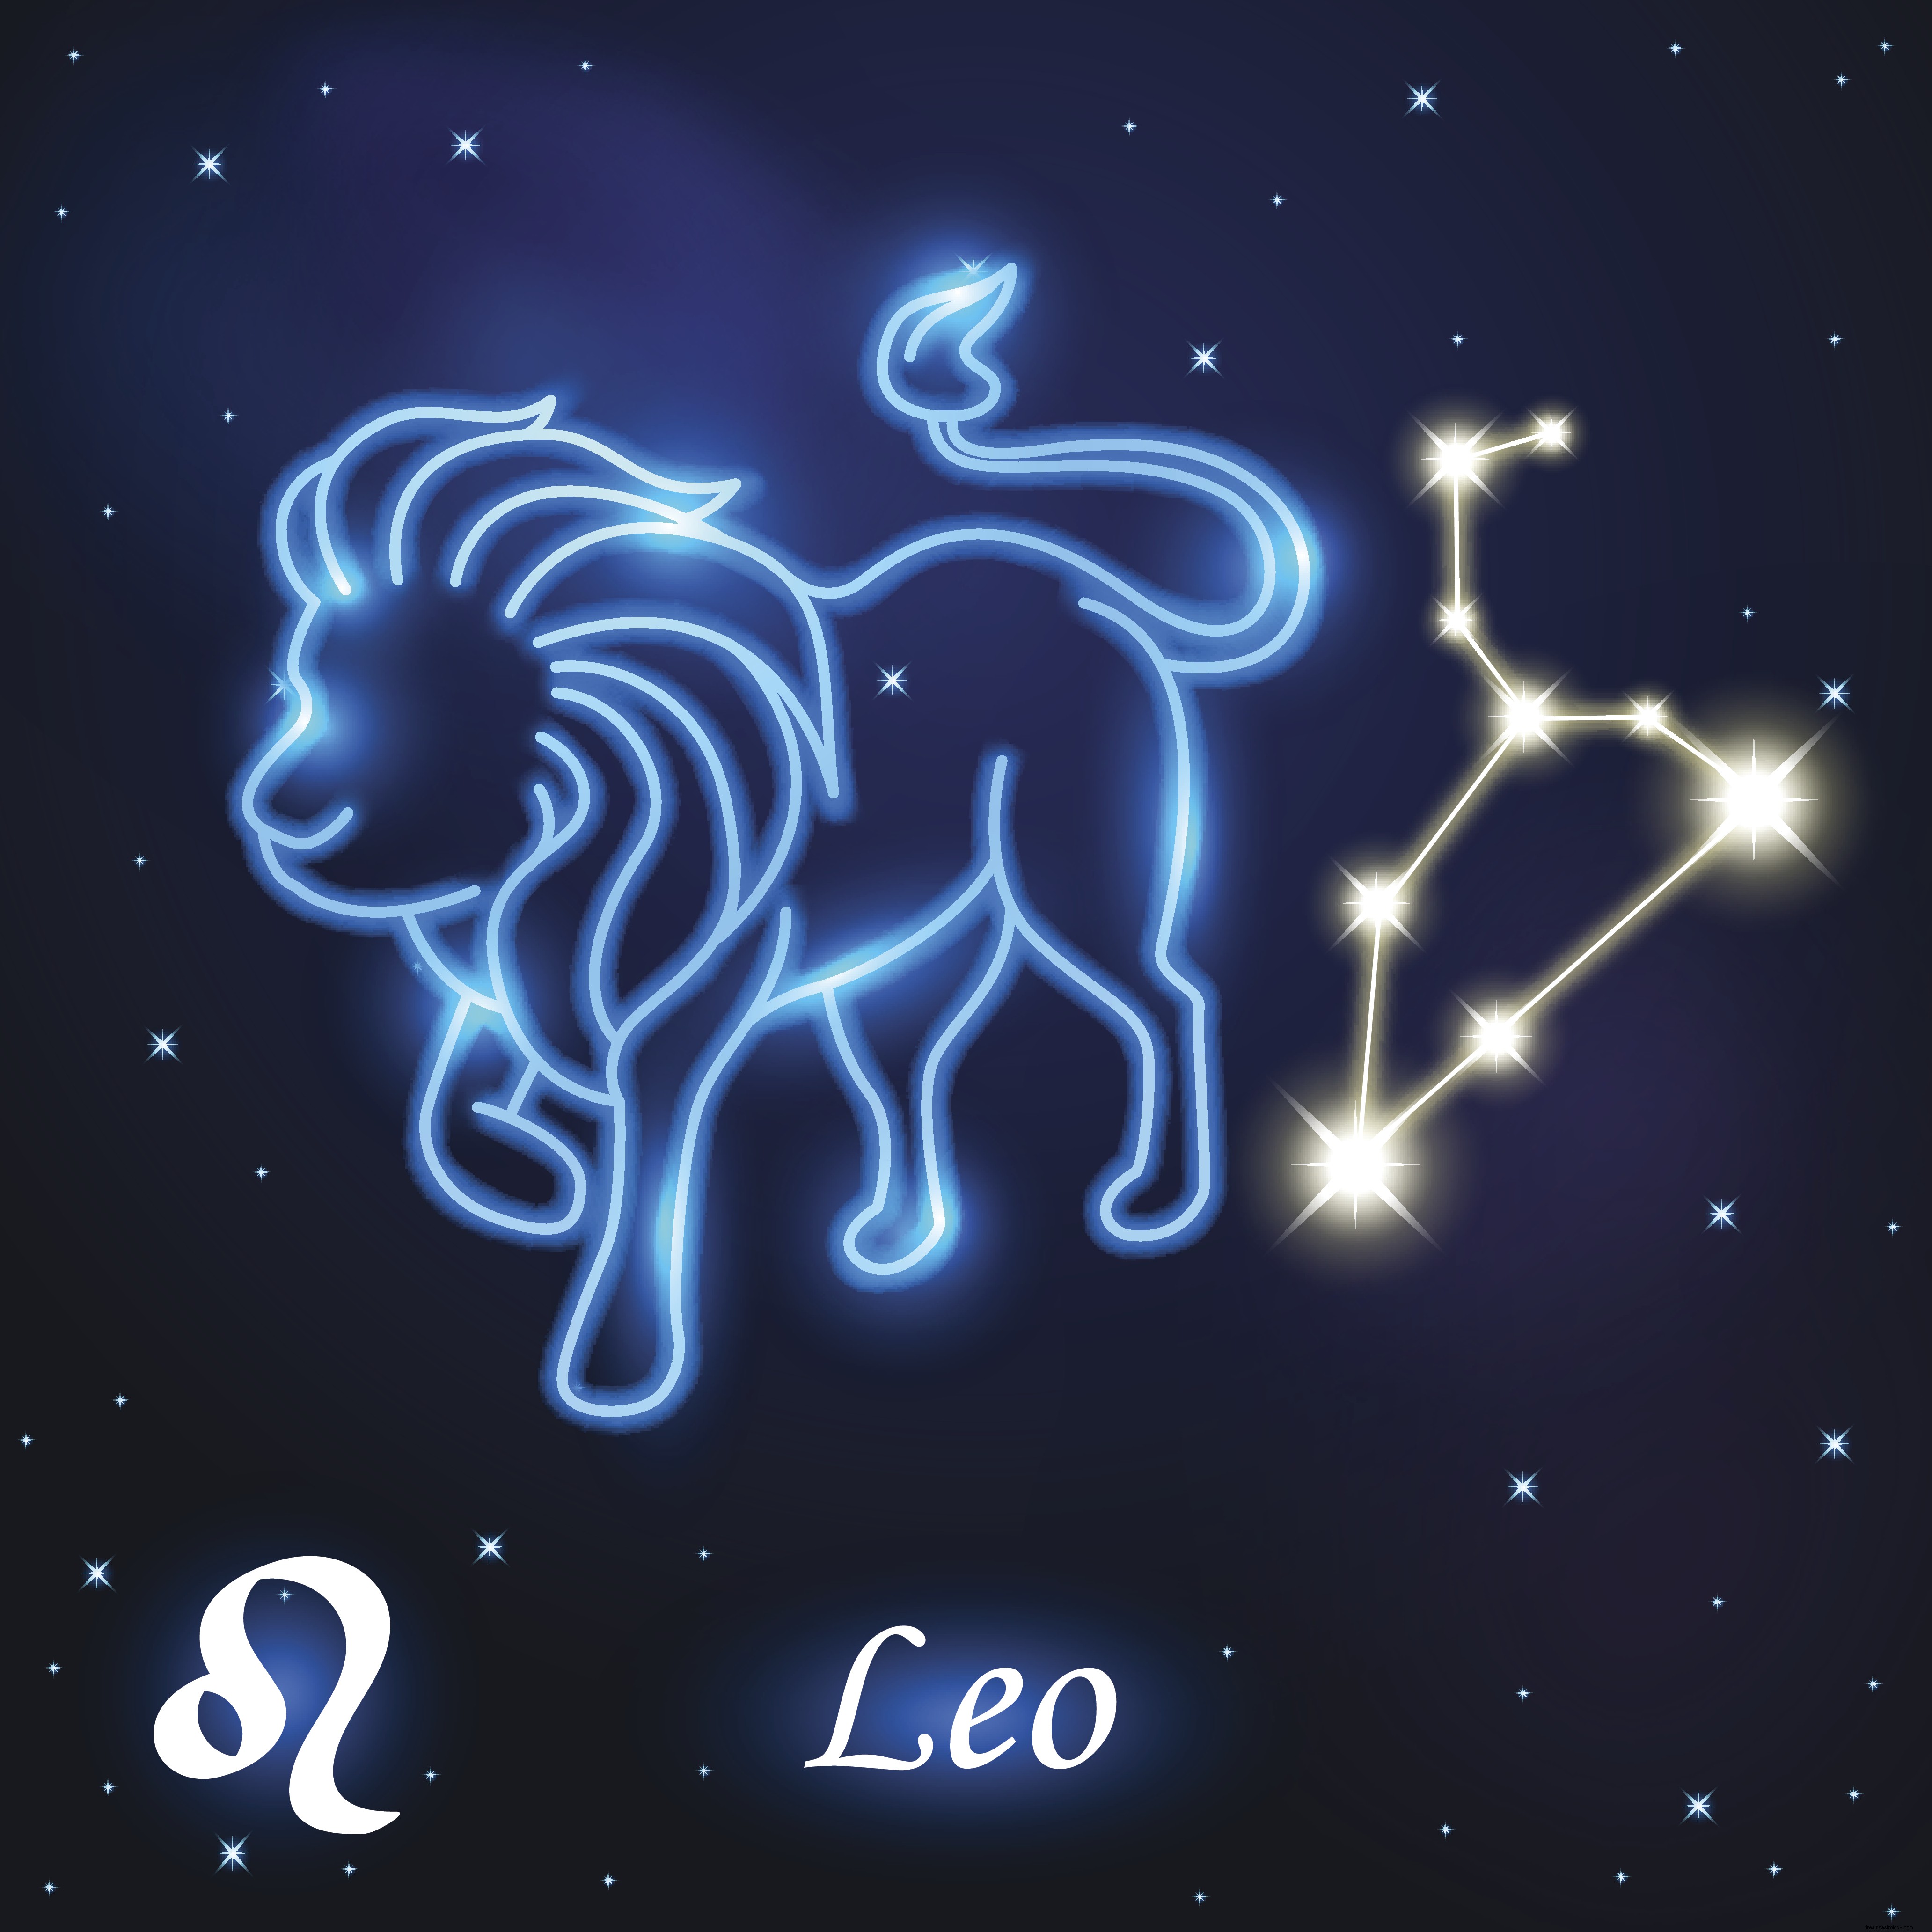 13 december 2019 Horoskop idag:Vill du veta hur din dag kommer att se ut? TA REDA PÅ 